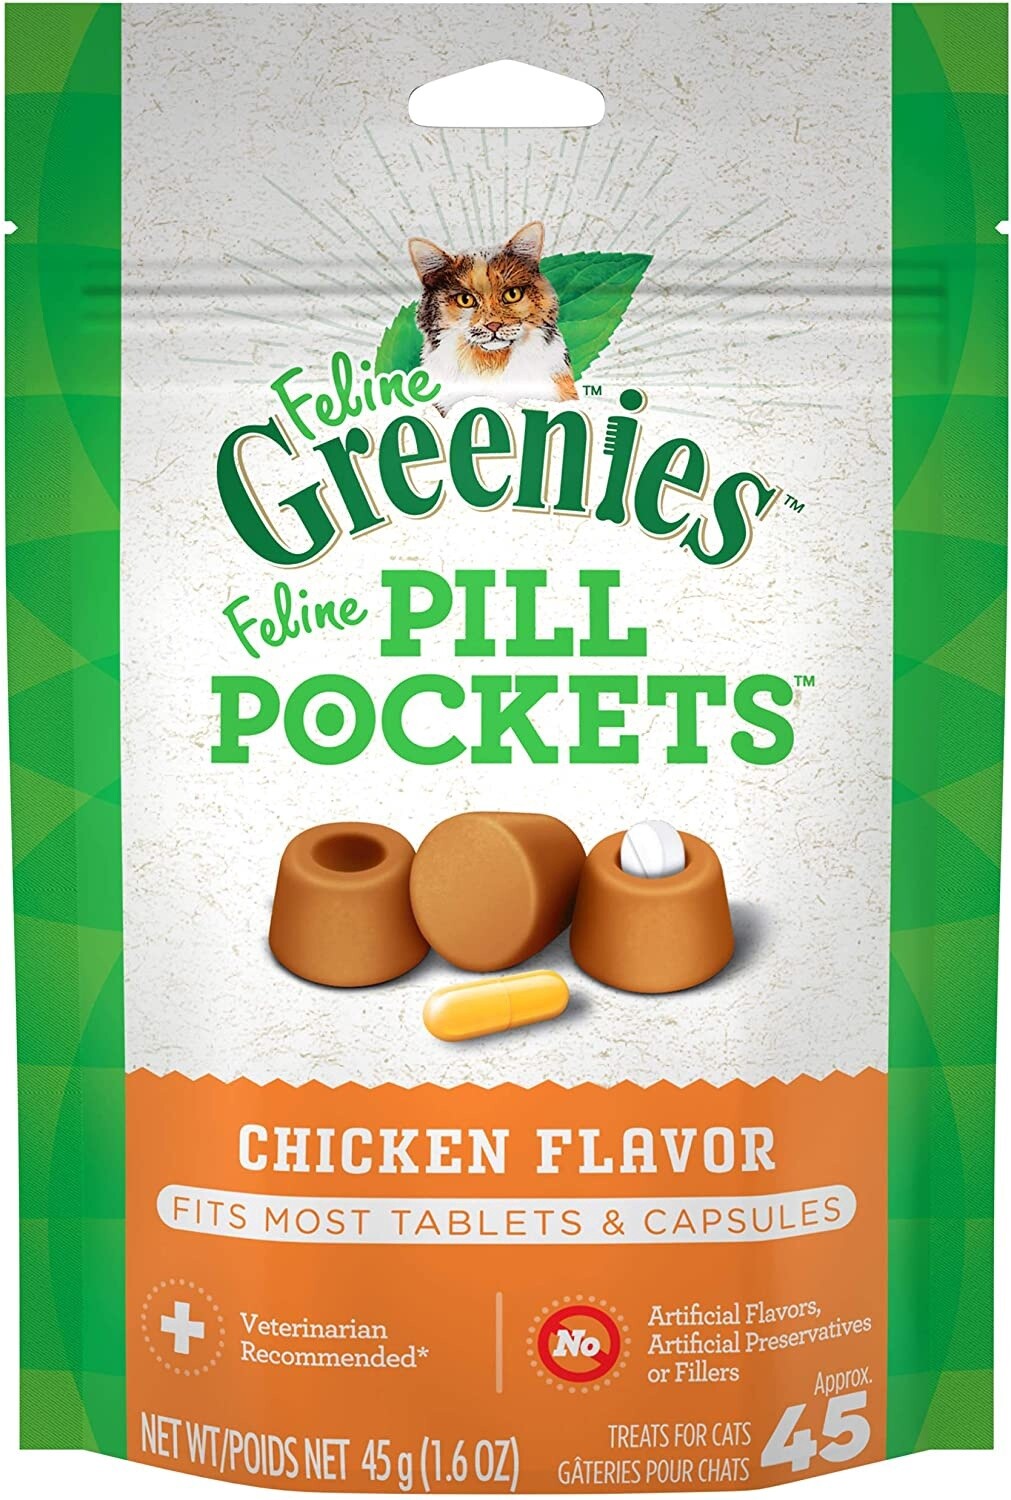 Greenies Pill Pockets Chicken